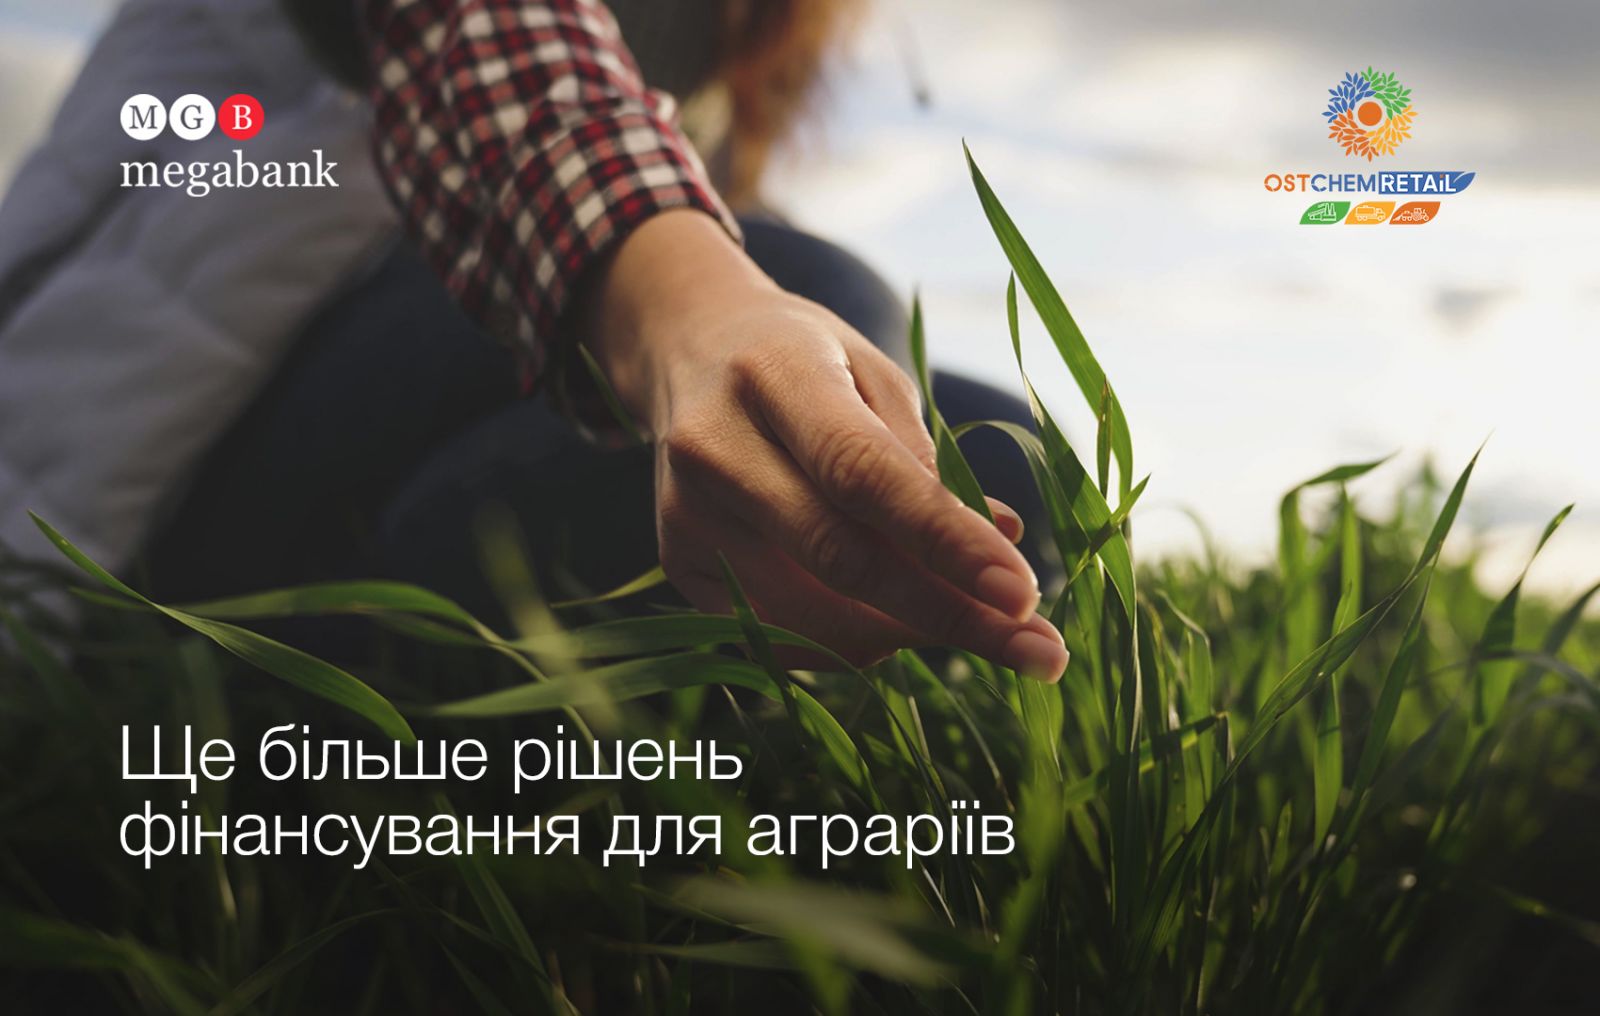 "Мегабанк" и OSTCHEM RETAiL запустят специальные кредитные программы для аграриев